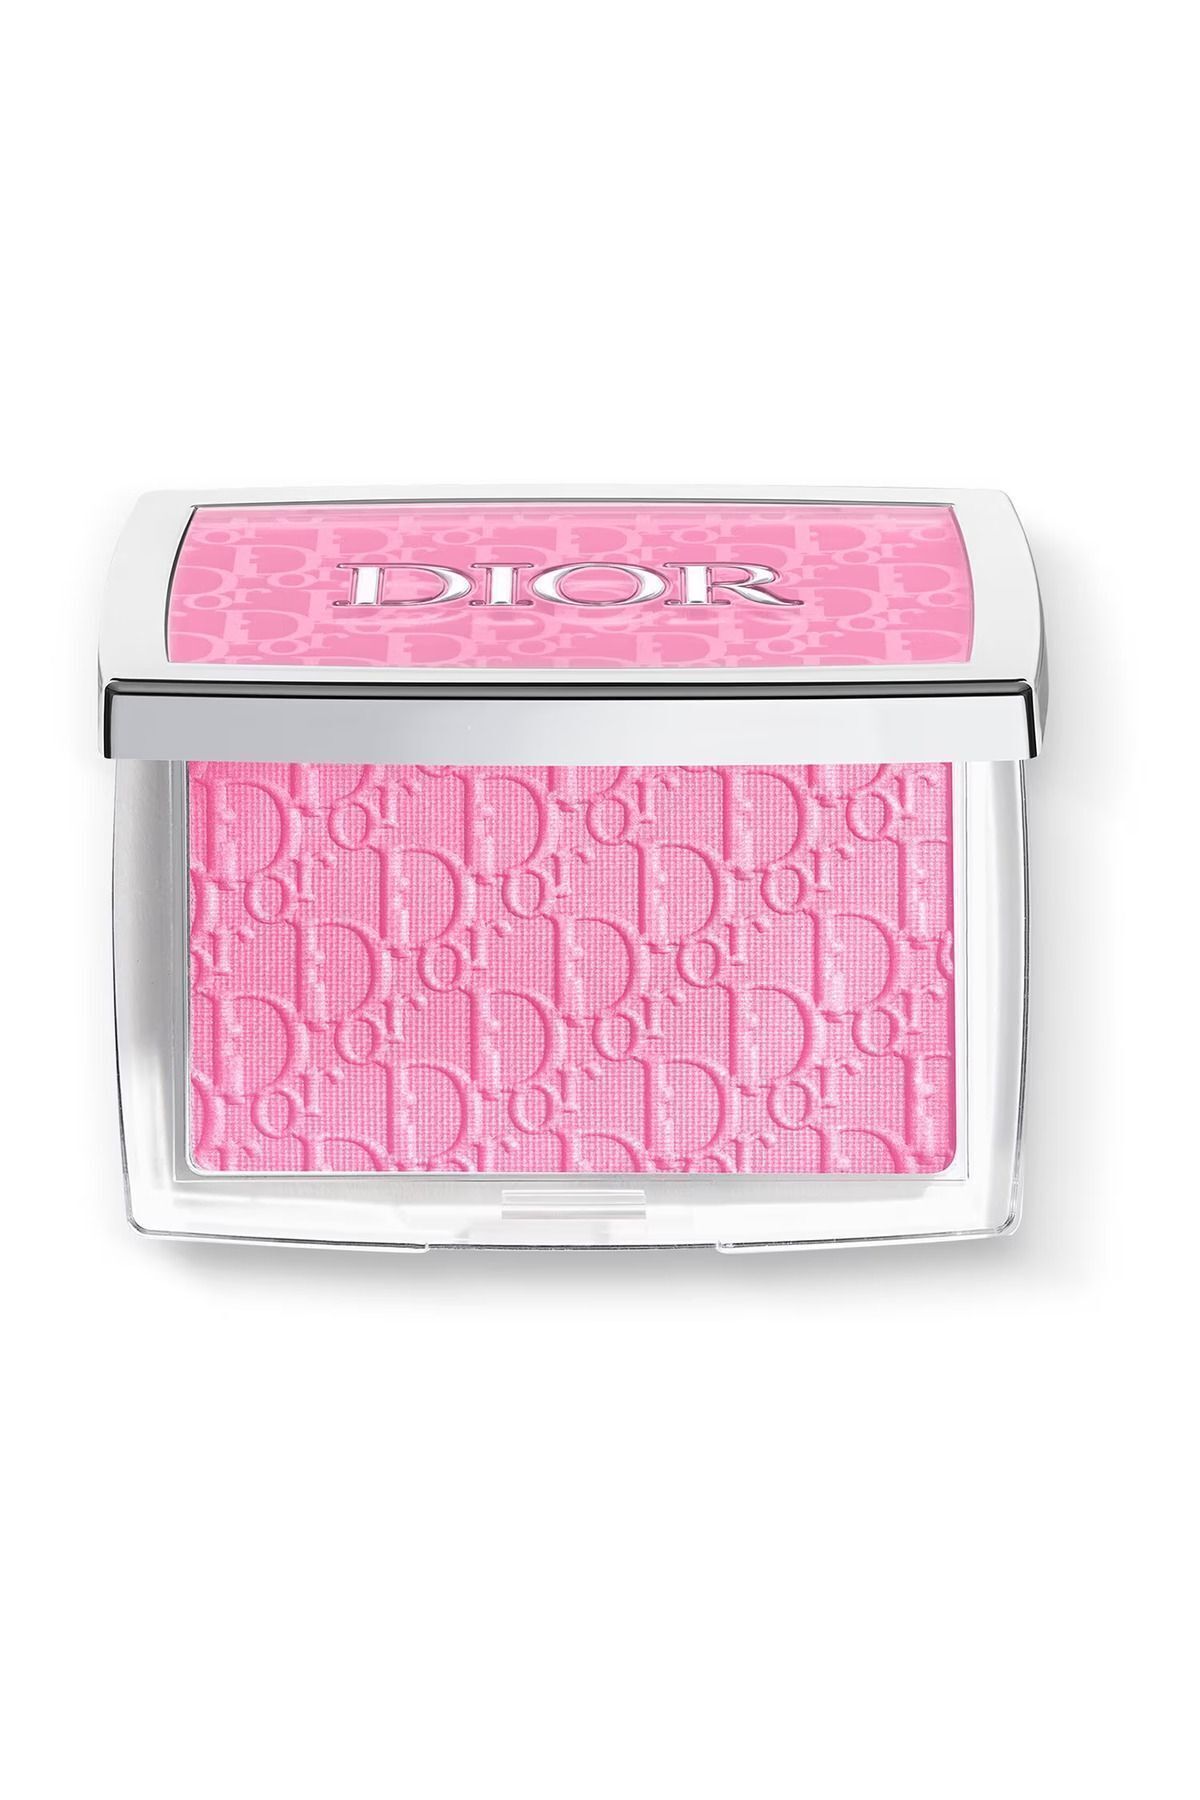 Dior -allık Rosy Glow 01 Pink - 4,4 gr